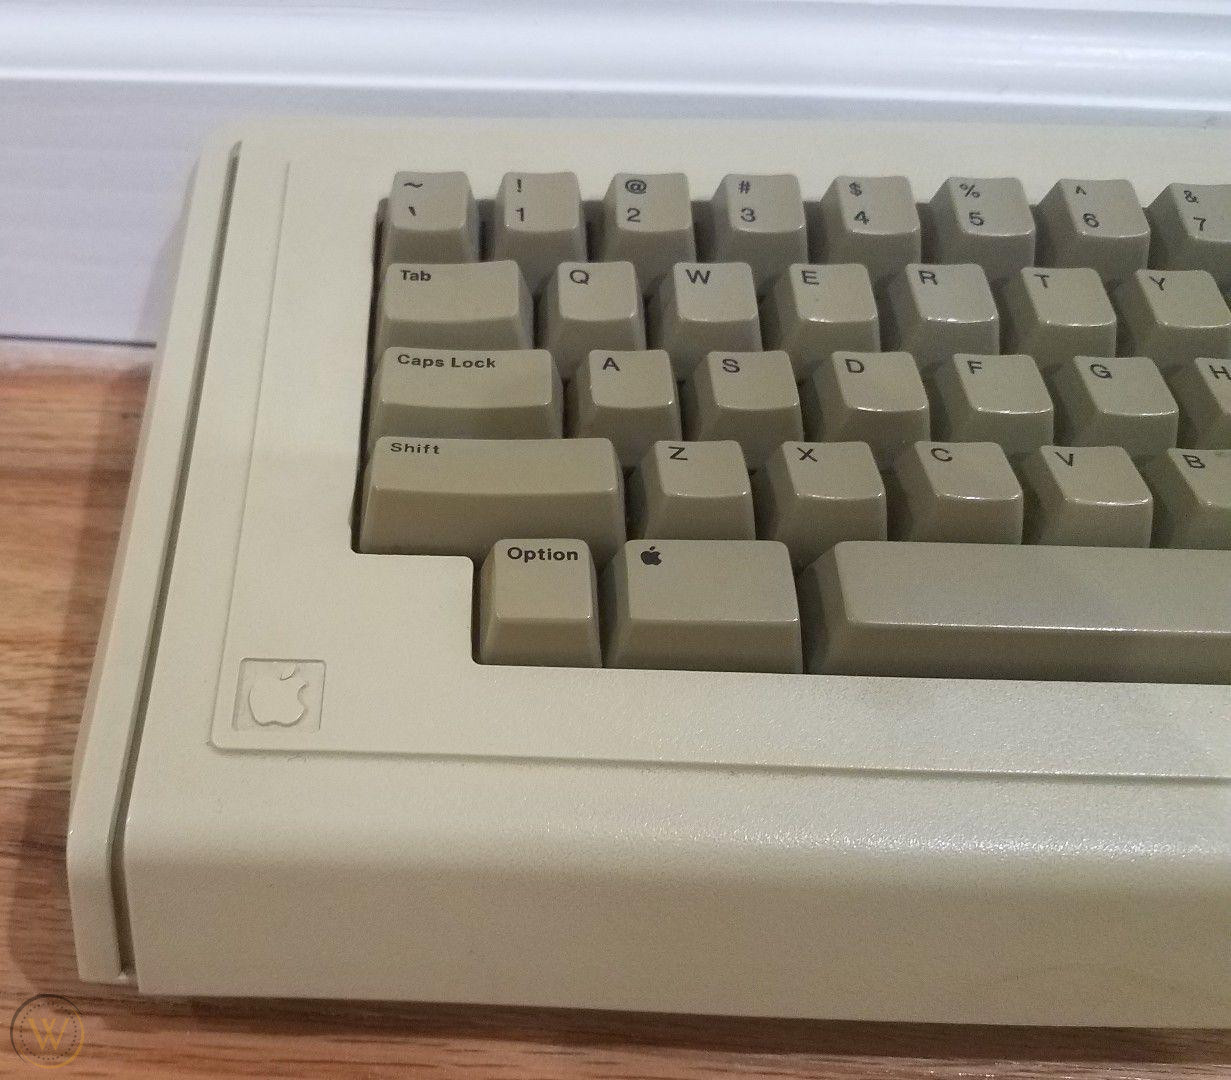 Teclat original de l'Apple Lisa, on s'hi pot veure la "Apple key", on ara hi ha la tecla Command